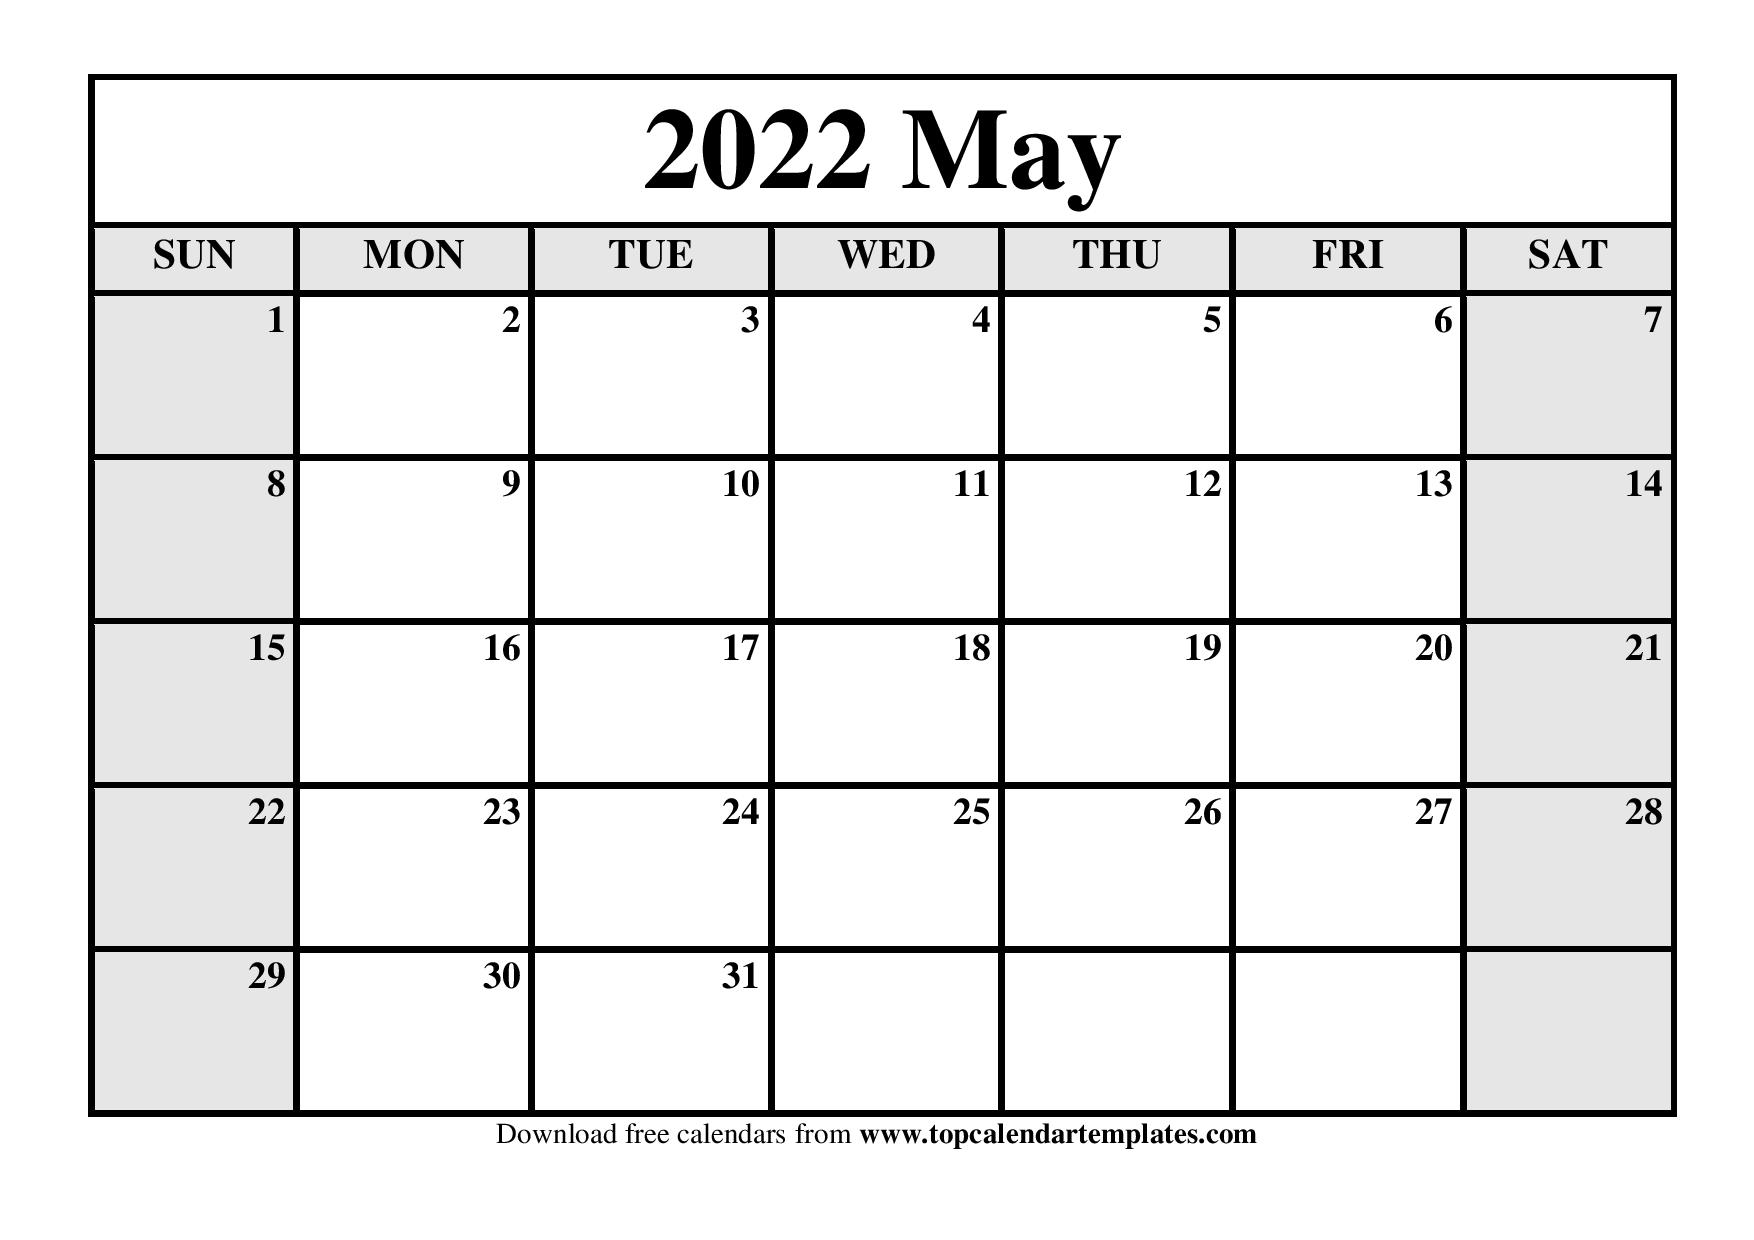 May 2022 Printable Calendar Printable Calendar May 2022 Templates - Pdf, Word, Excel